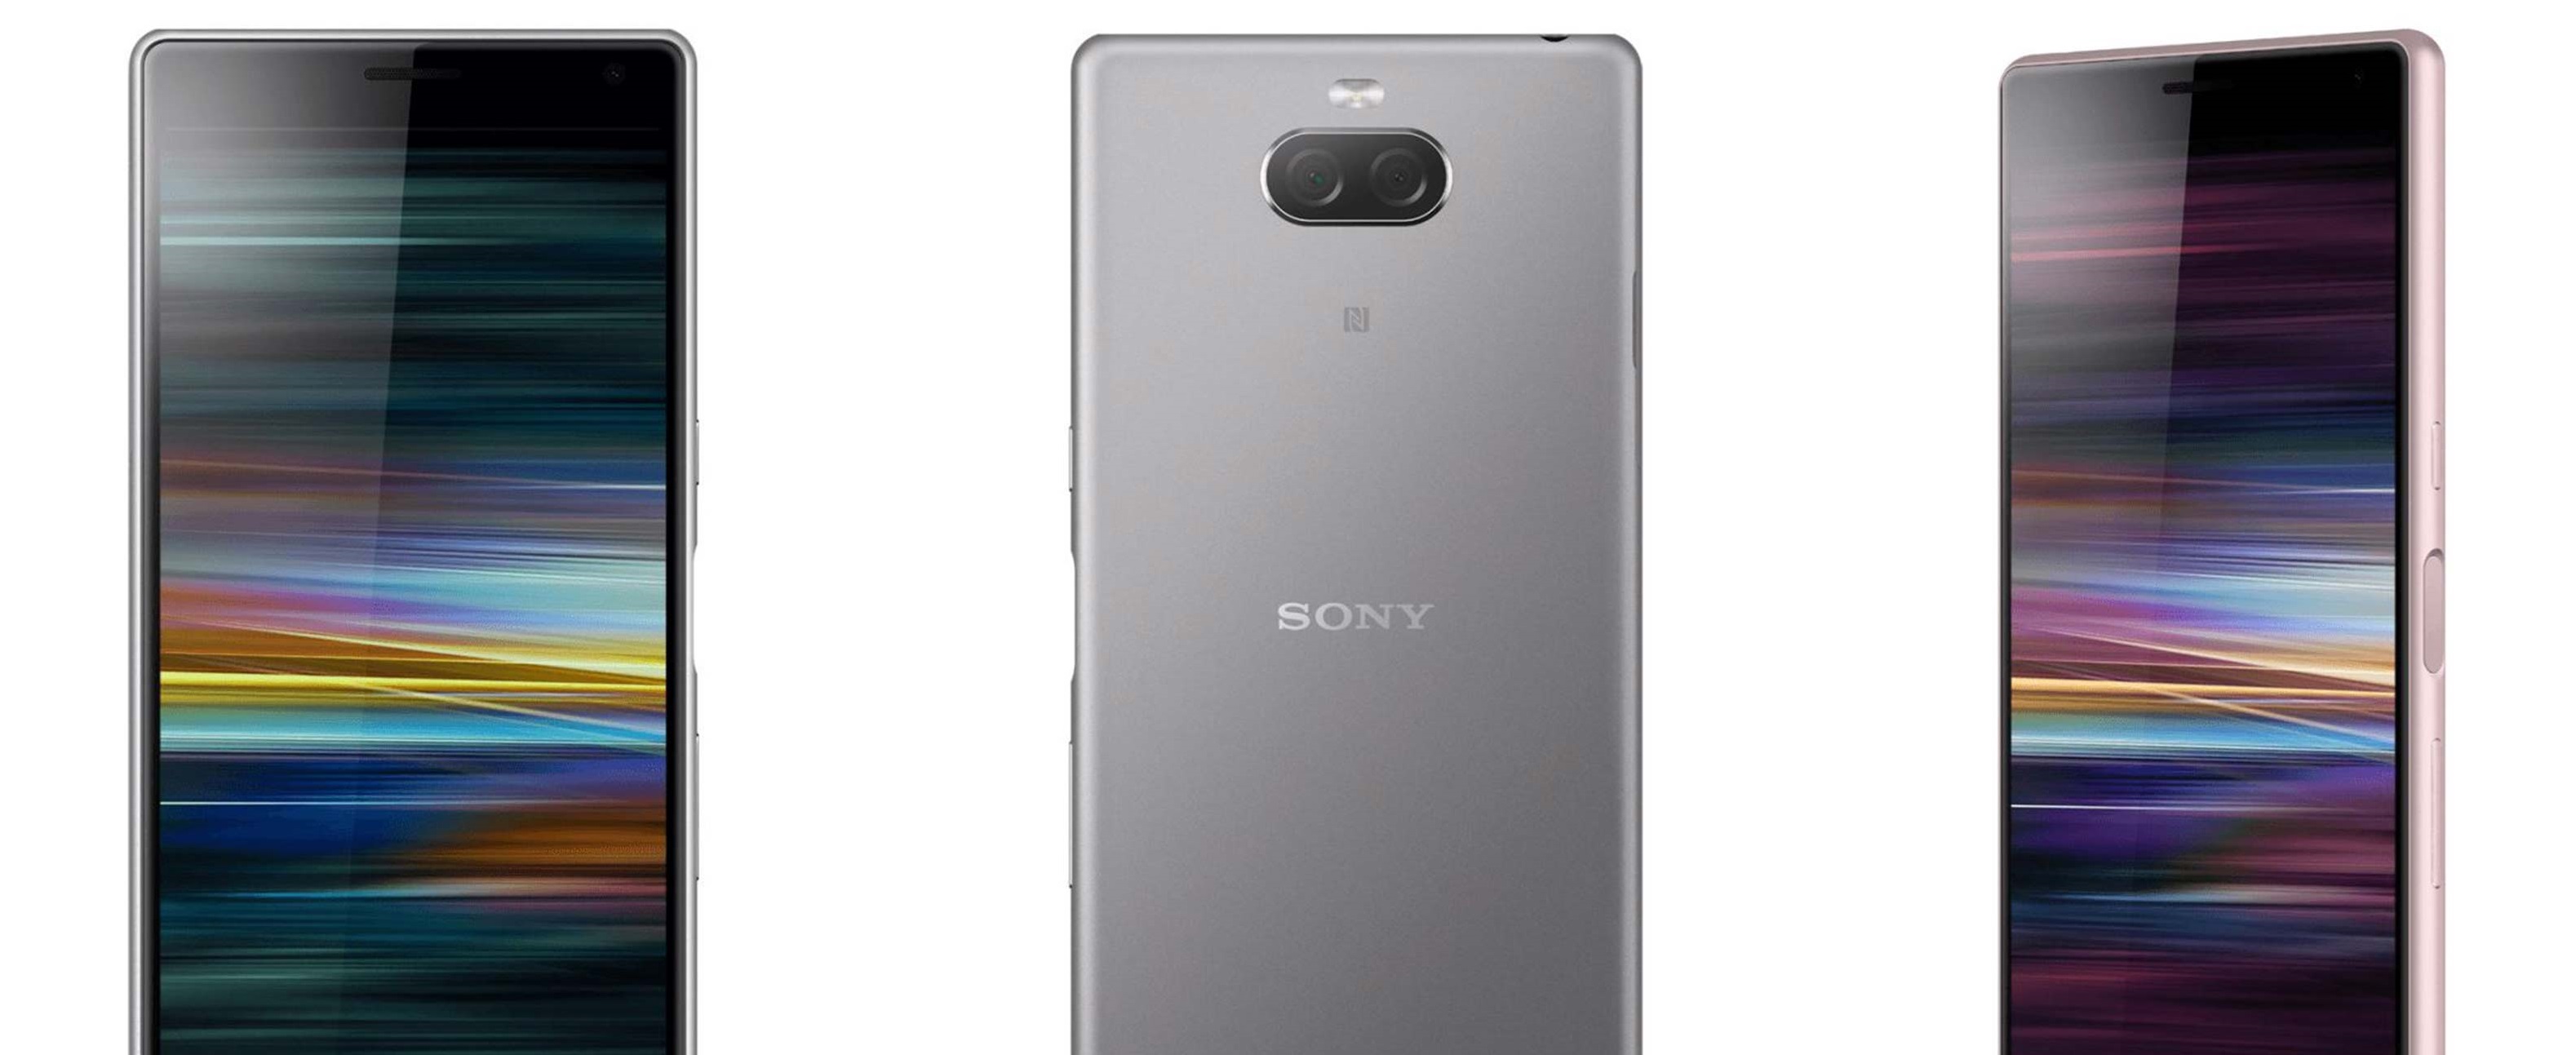 كل ما نعرفه عن هاتفي Sony Xperia XA3 وSony Xperia XA3 Ultra القادمين